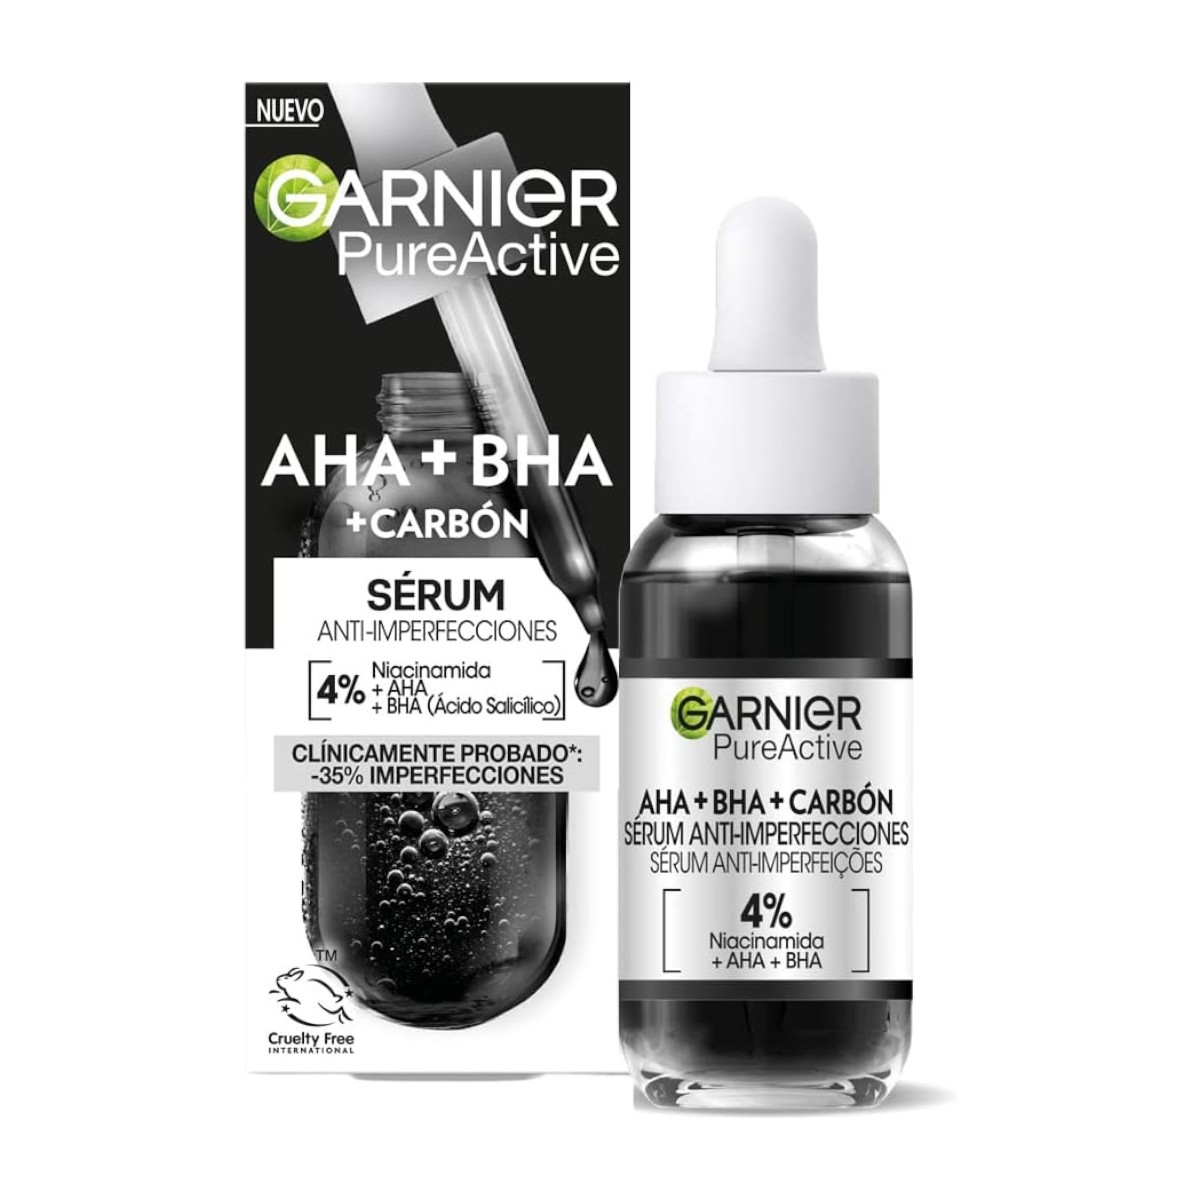 Garnier - GARNIER Pure Active sérumn facial anti-imperfecciones con AHA + BHA + carbón dosificador con 4% de Niacinamida, AHA y BHA Pure Active 30 ml